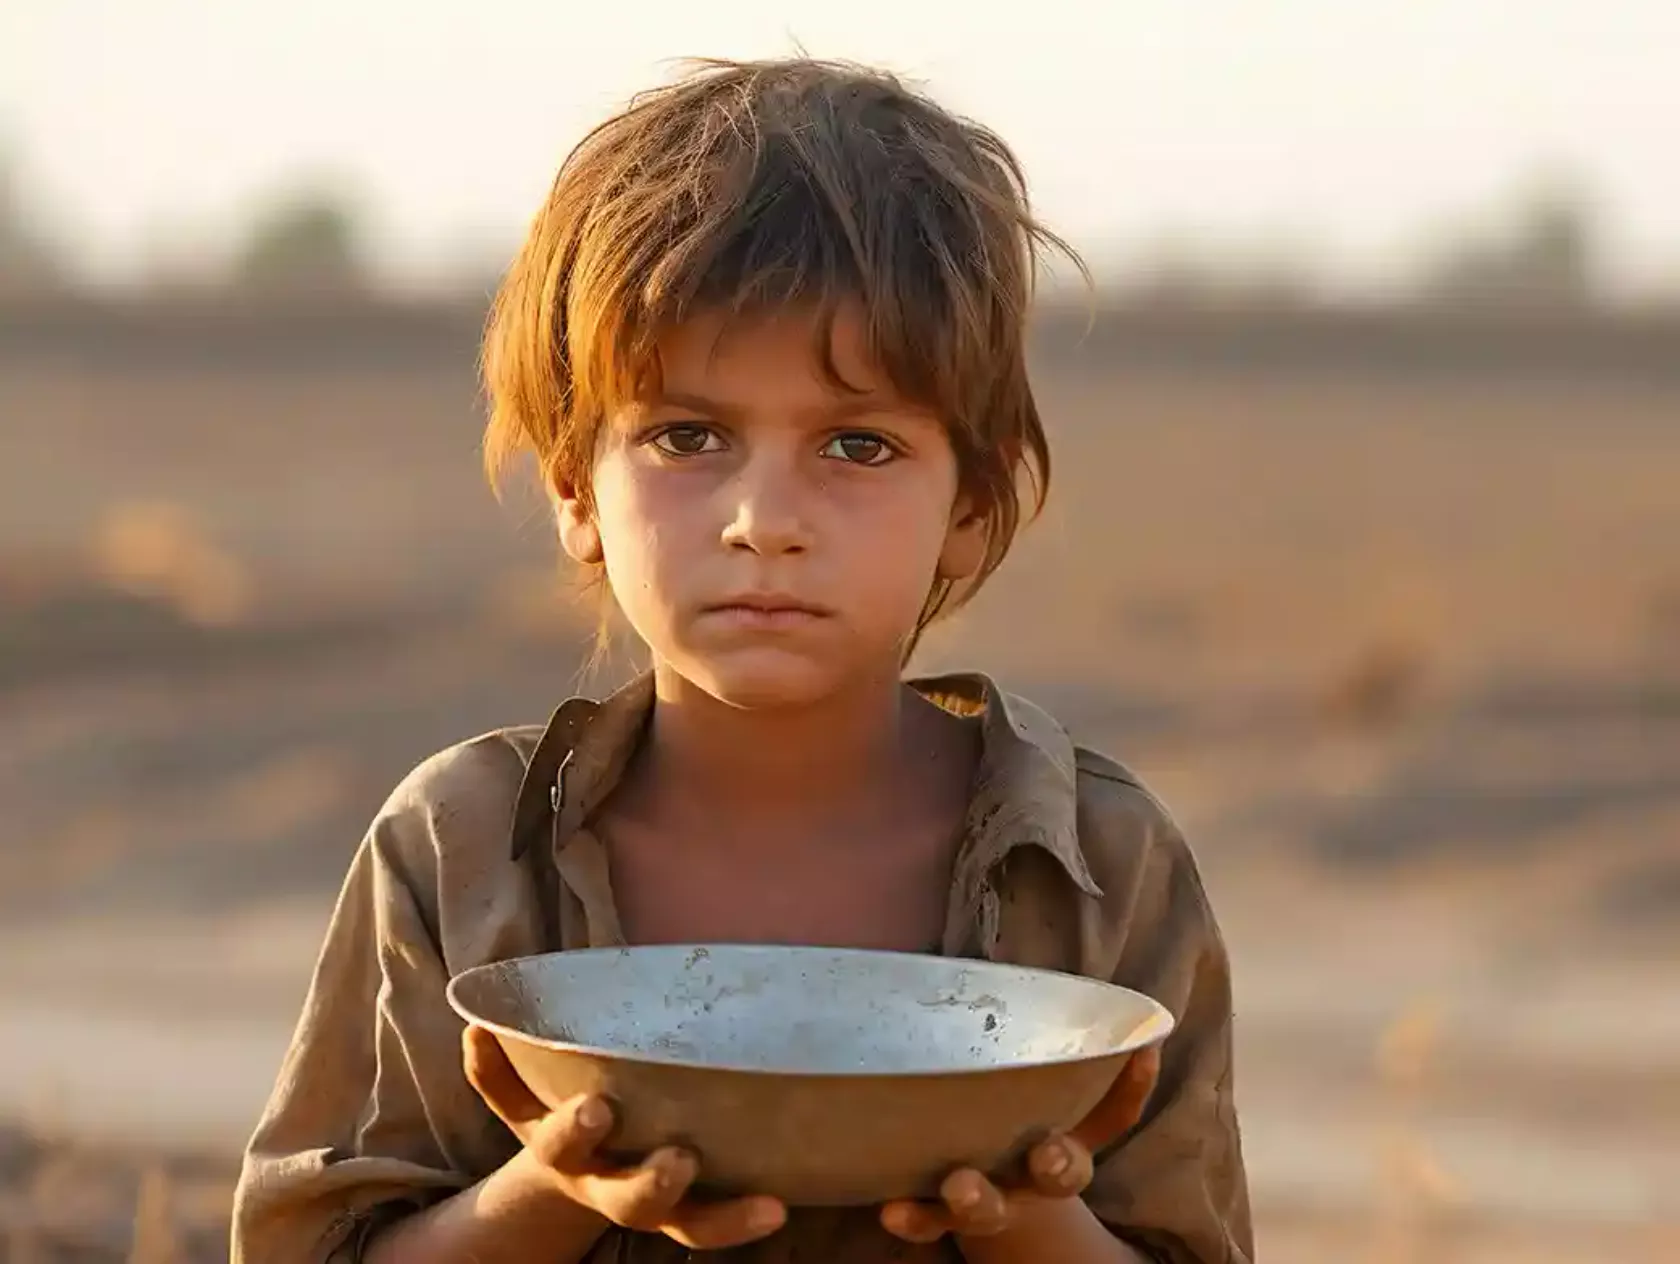 Kleiner Junge in sehr karger Landschaft hält eine leere Schale in den Händen.